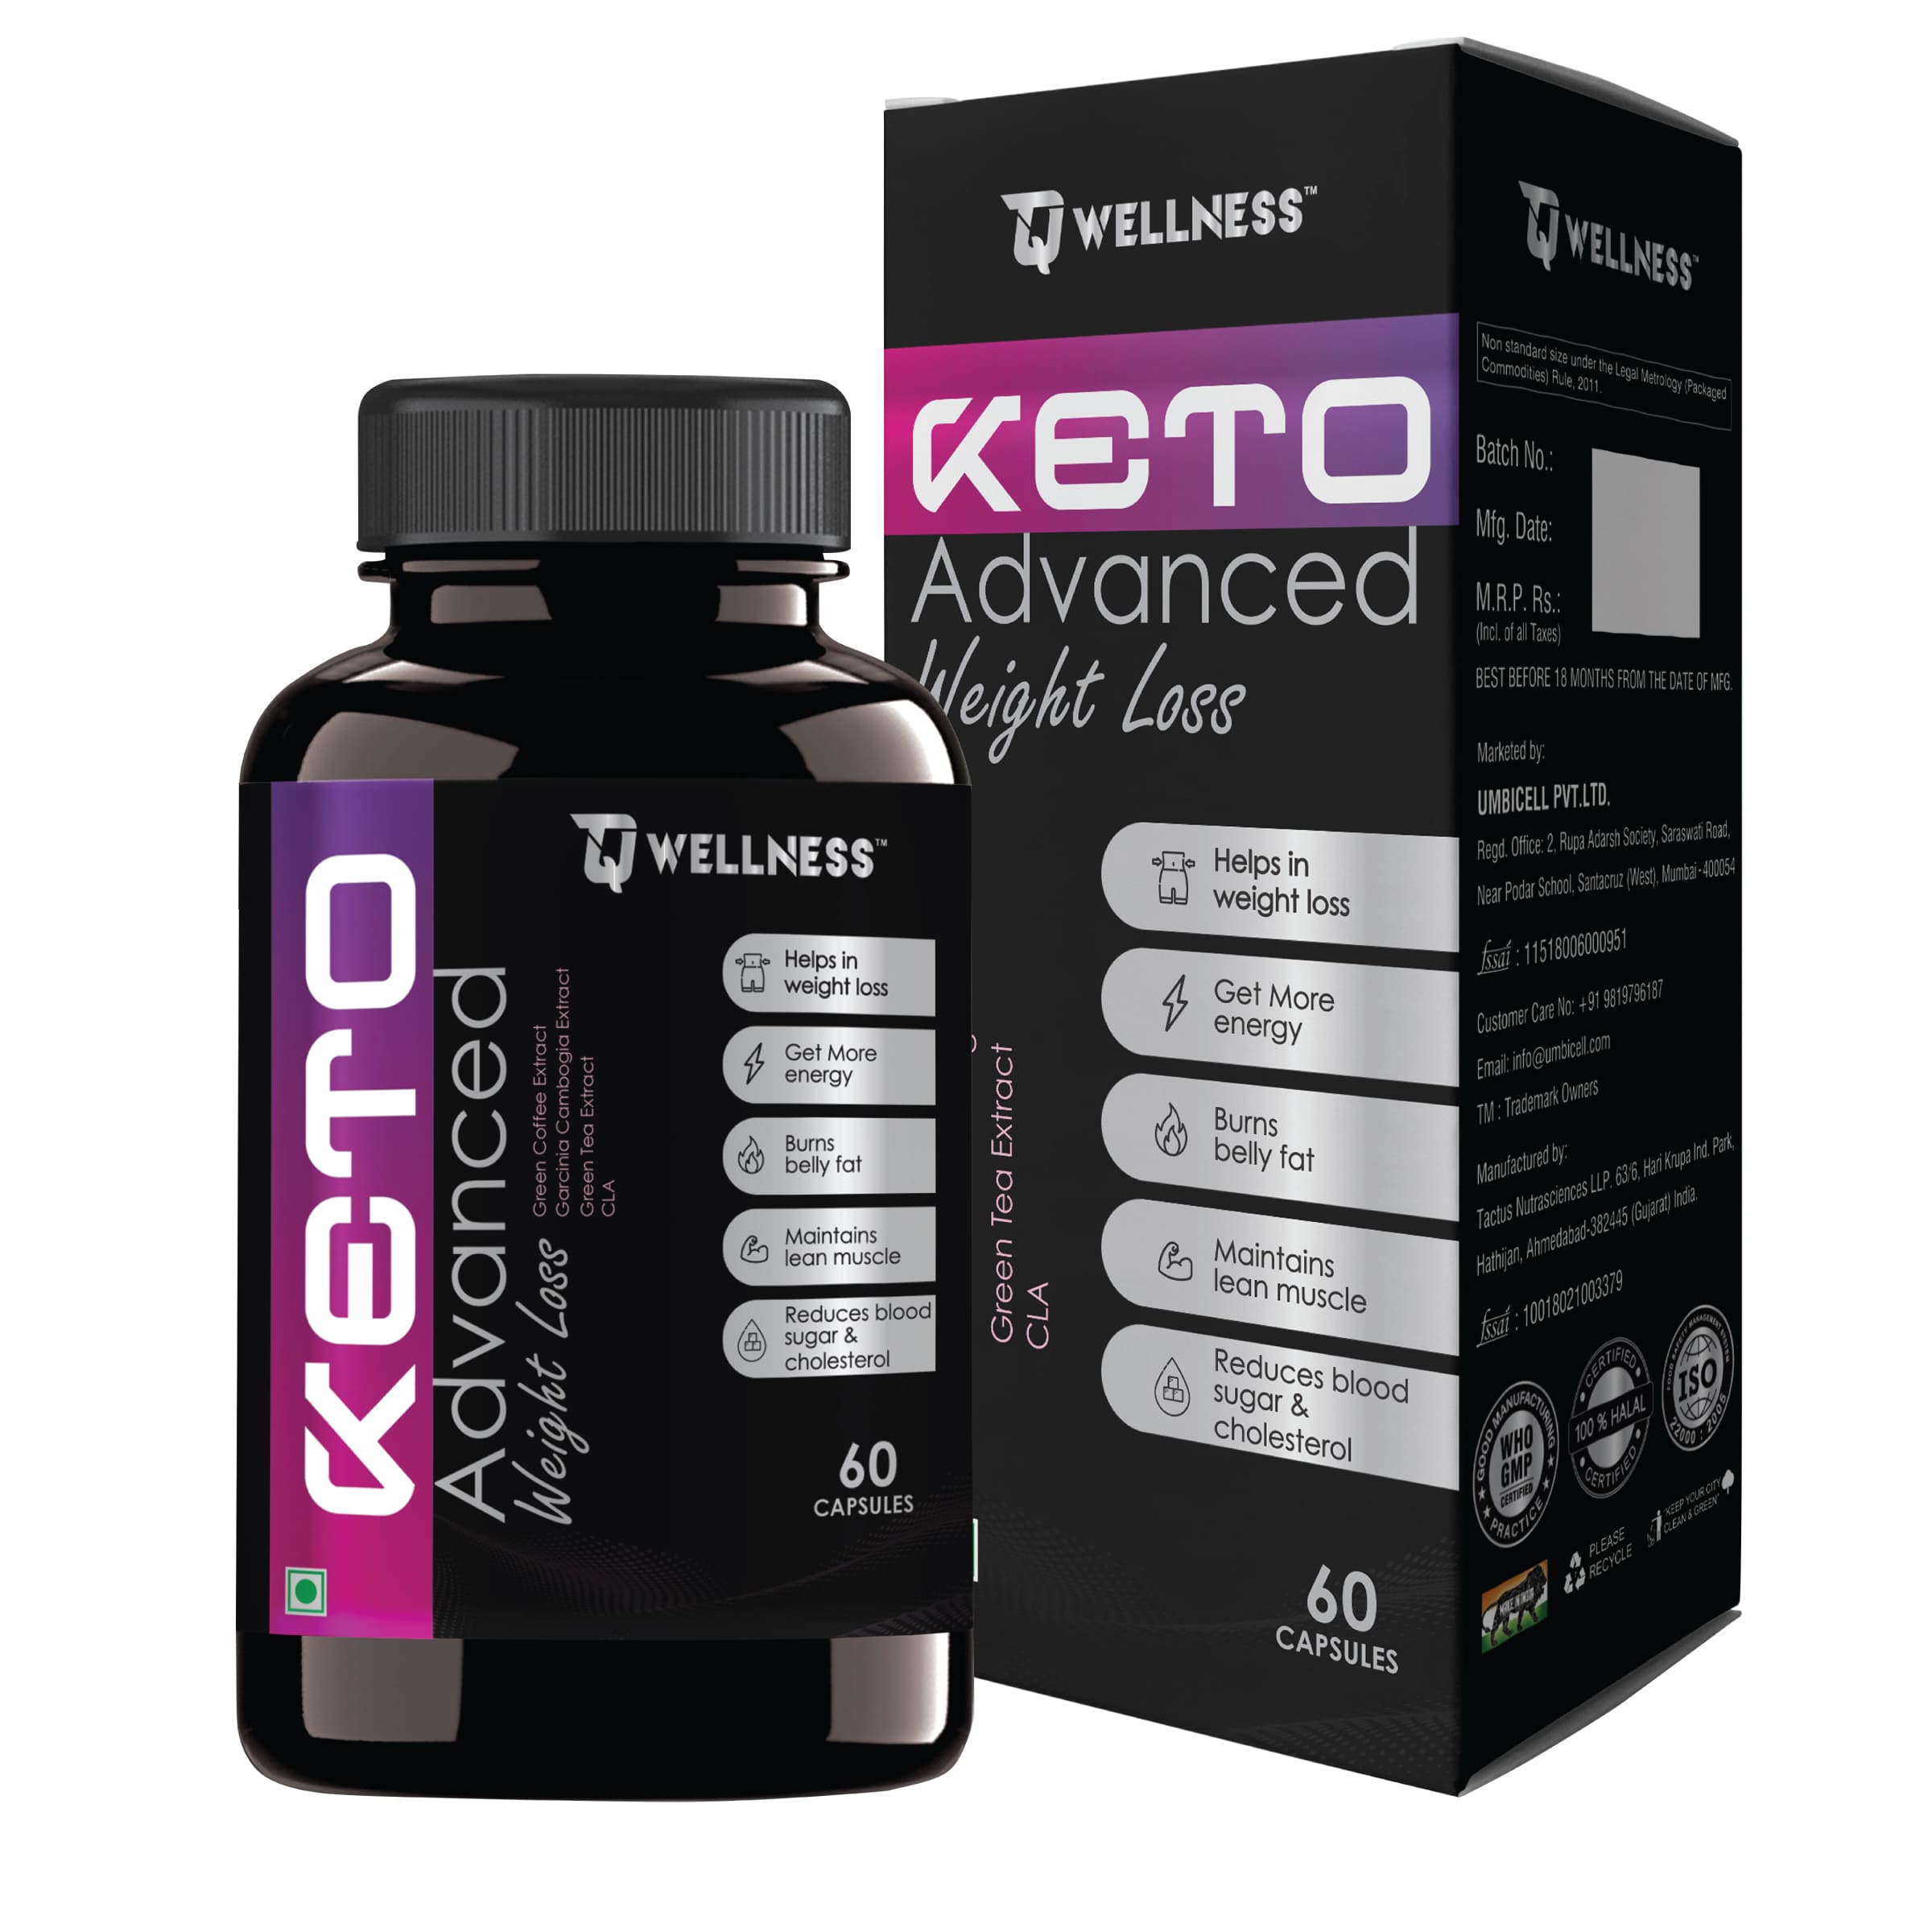 TQ Wellness Keto Advanced Weight Loss